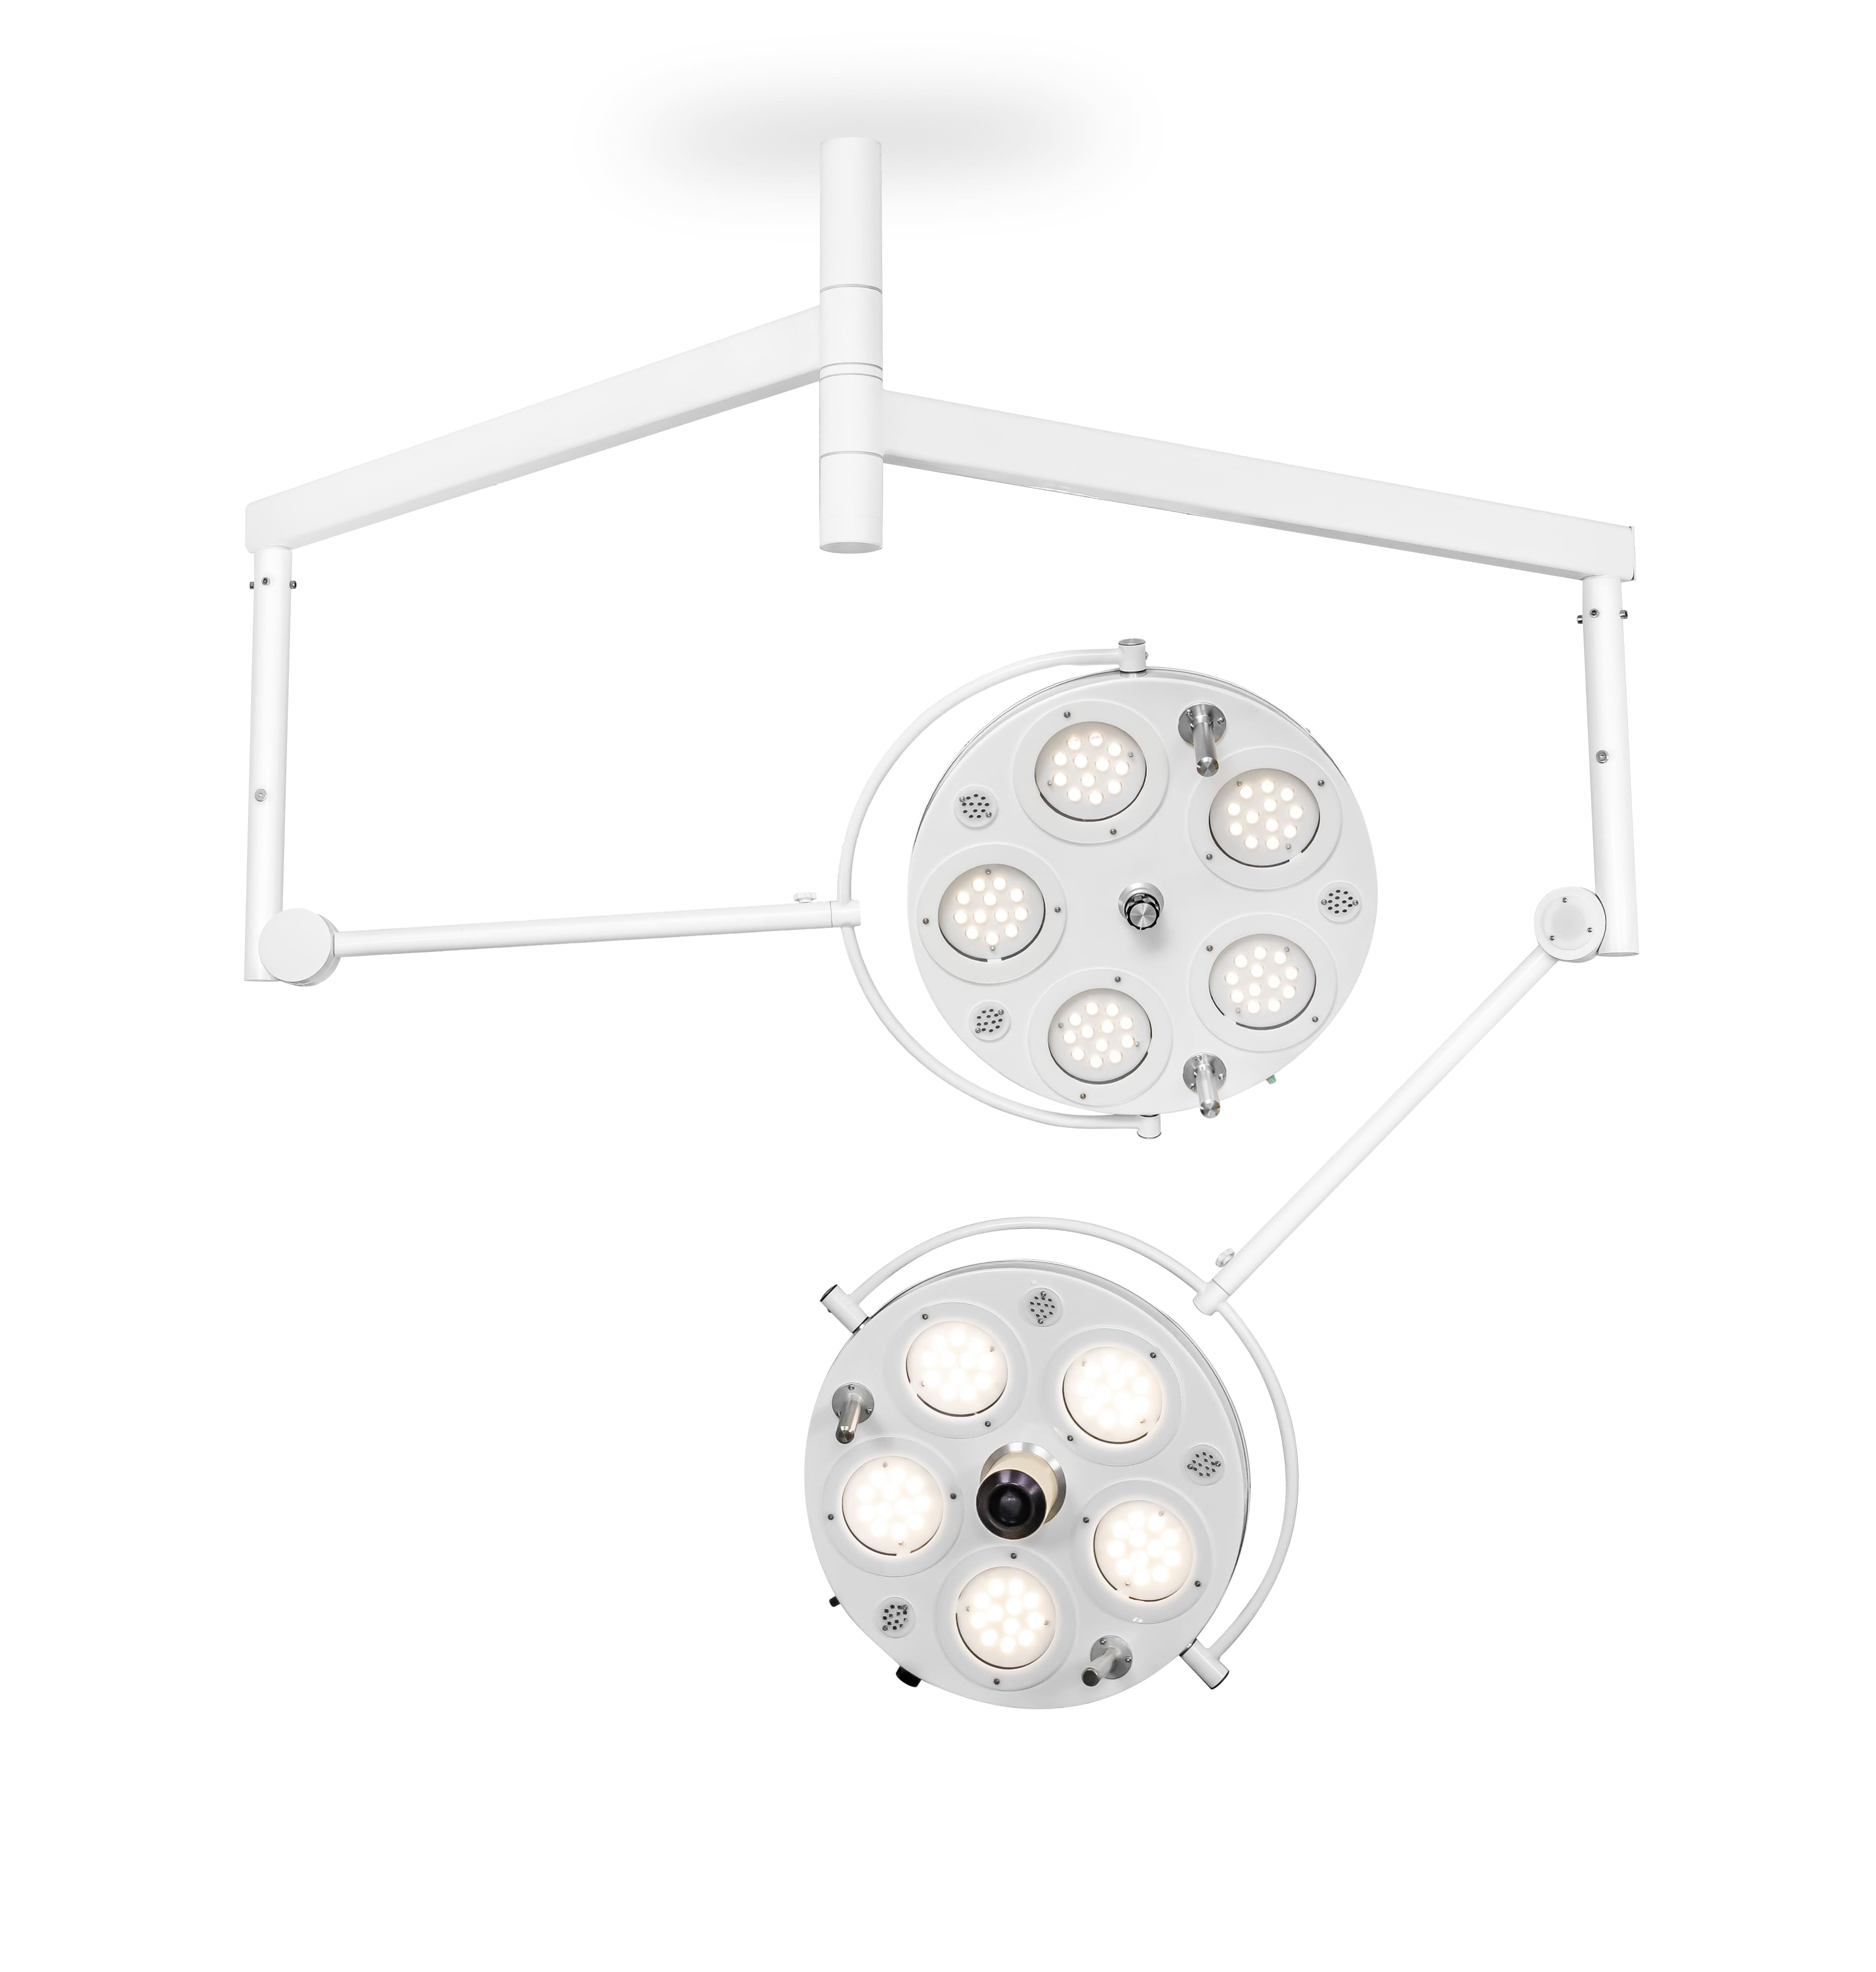 Медицинский двухкупольный хирургический светильник «FotonFly 6М5С», потолочный подвес - FotonFly 6М5С